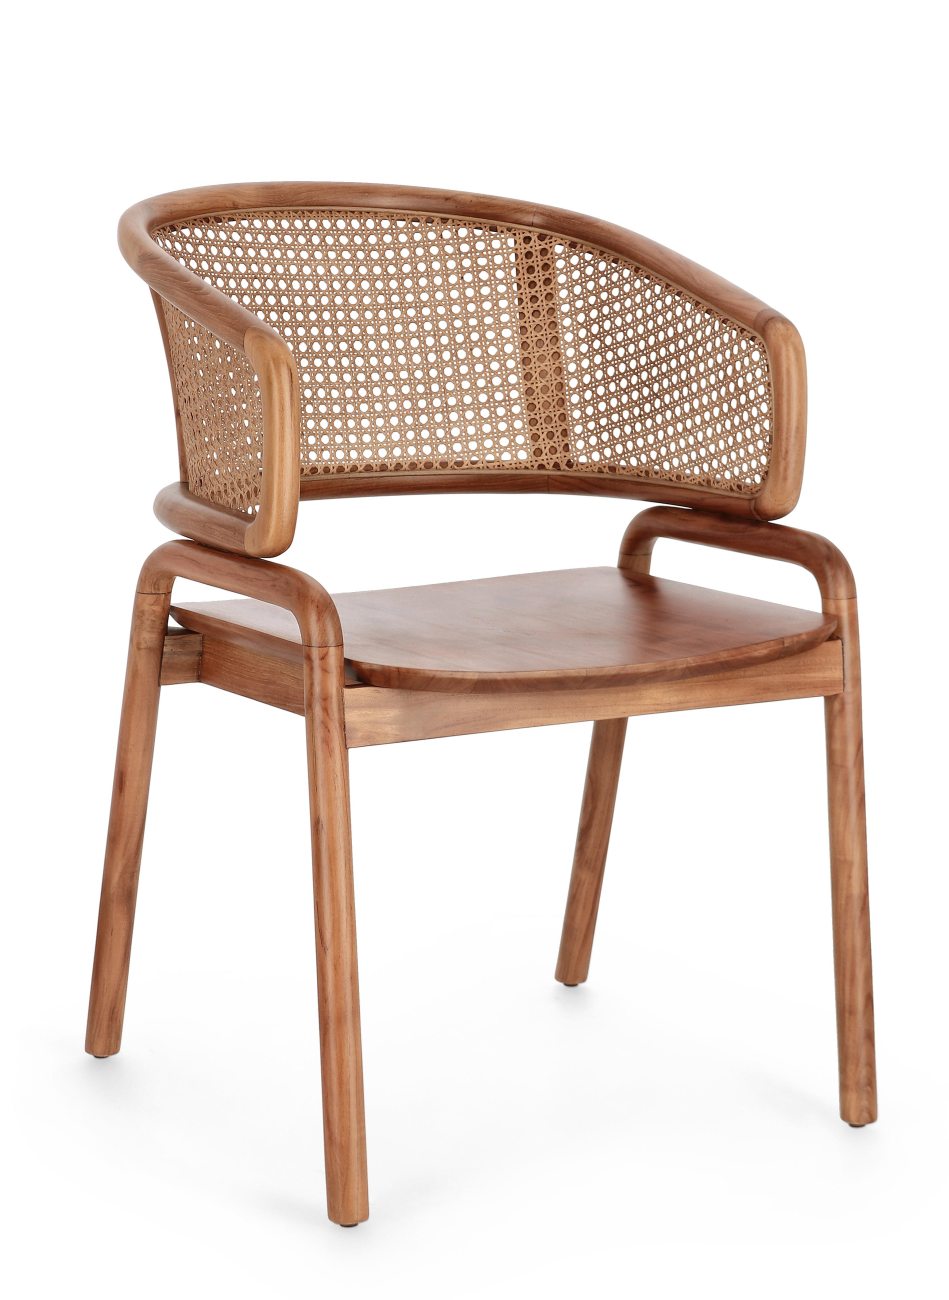 Der Esszimmerstuhl Keith überzeugt mit seinem modernen Stil. Gefertigt wurde er aus Teakholz, welcher einen natürlichen Farbton besitzt. Die Rückenlehne ist aus Rattan und hat eine natürliche Farbe. Der Stuhl besitzt eine Sitzhöhe von 44 cm.